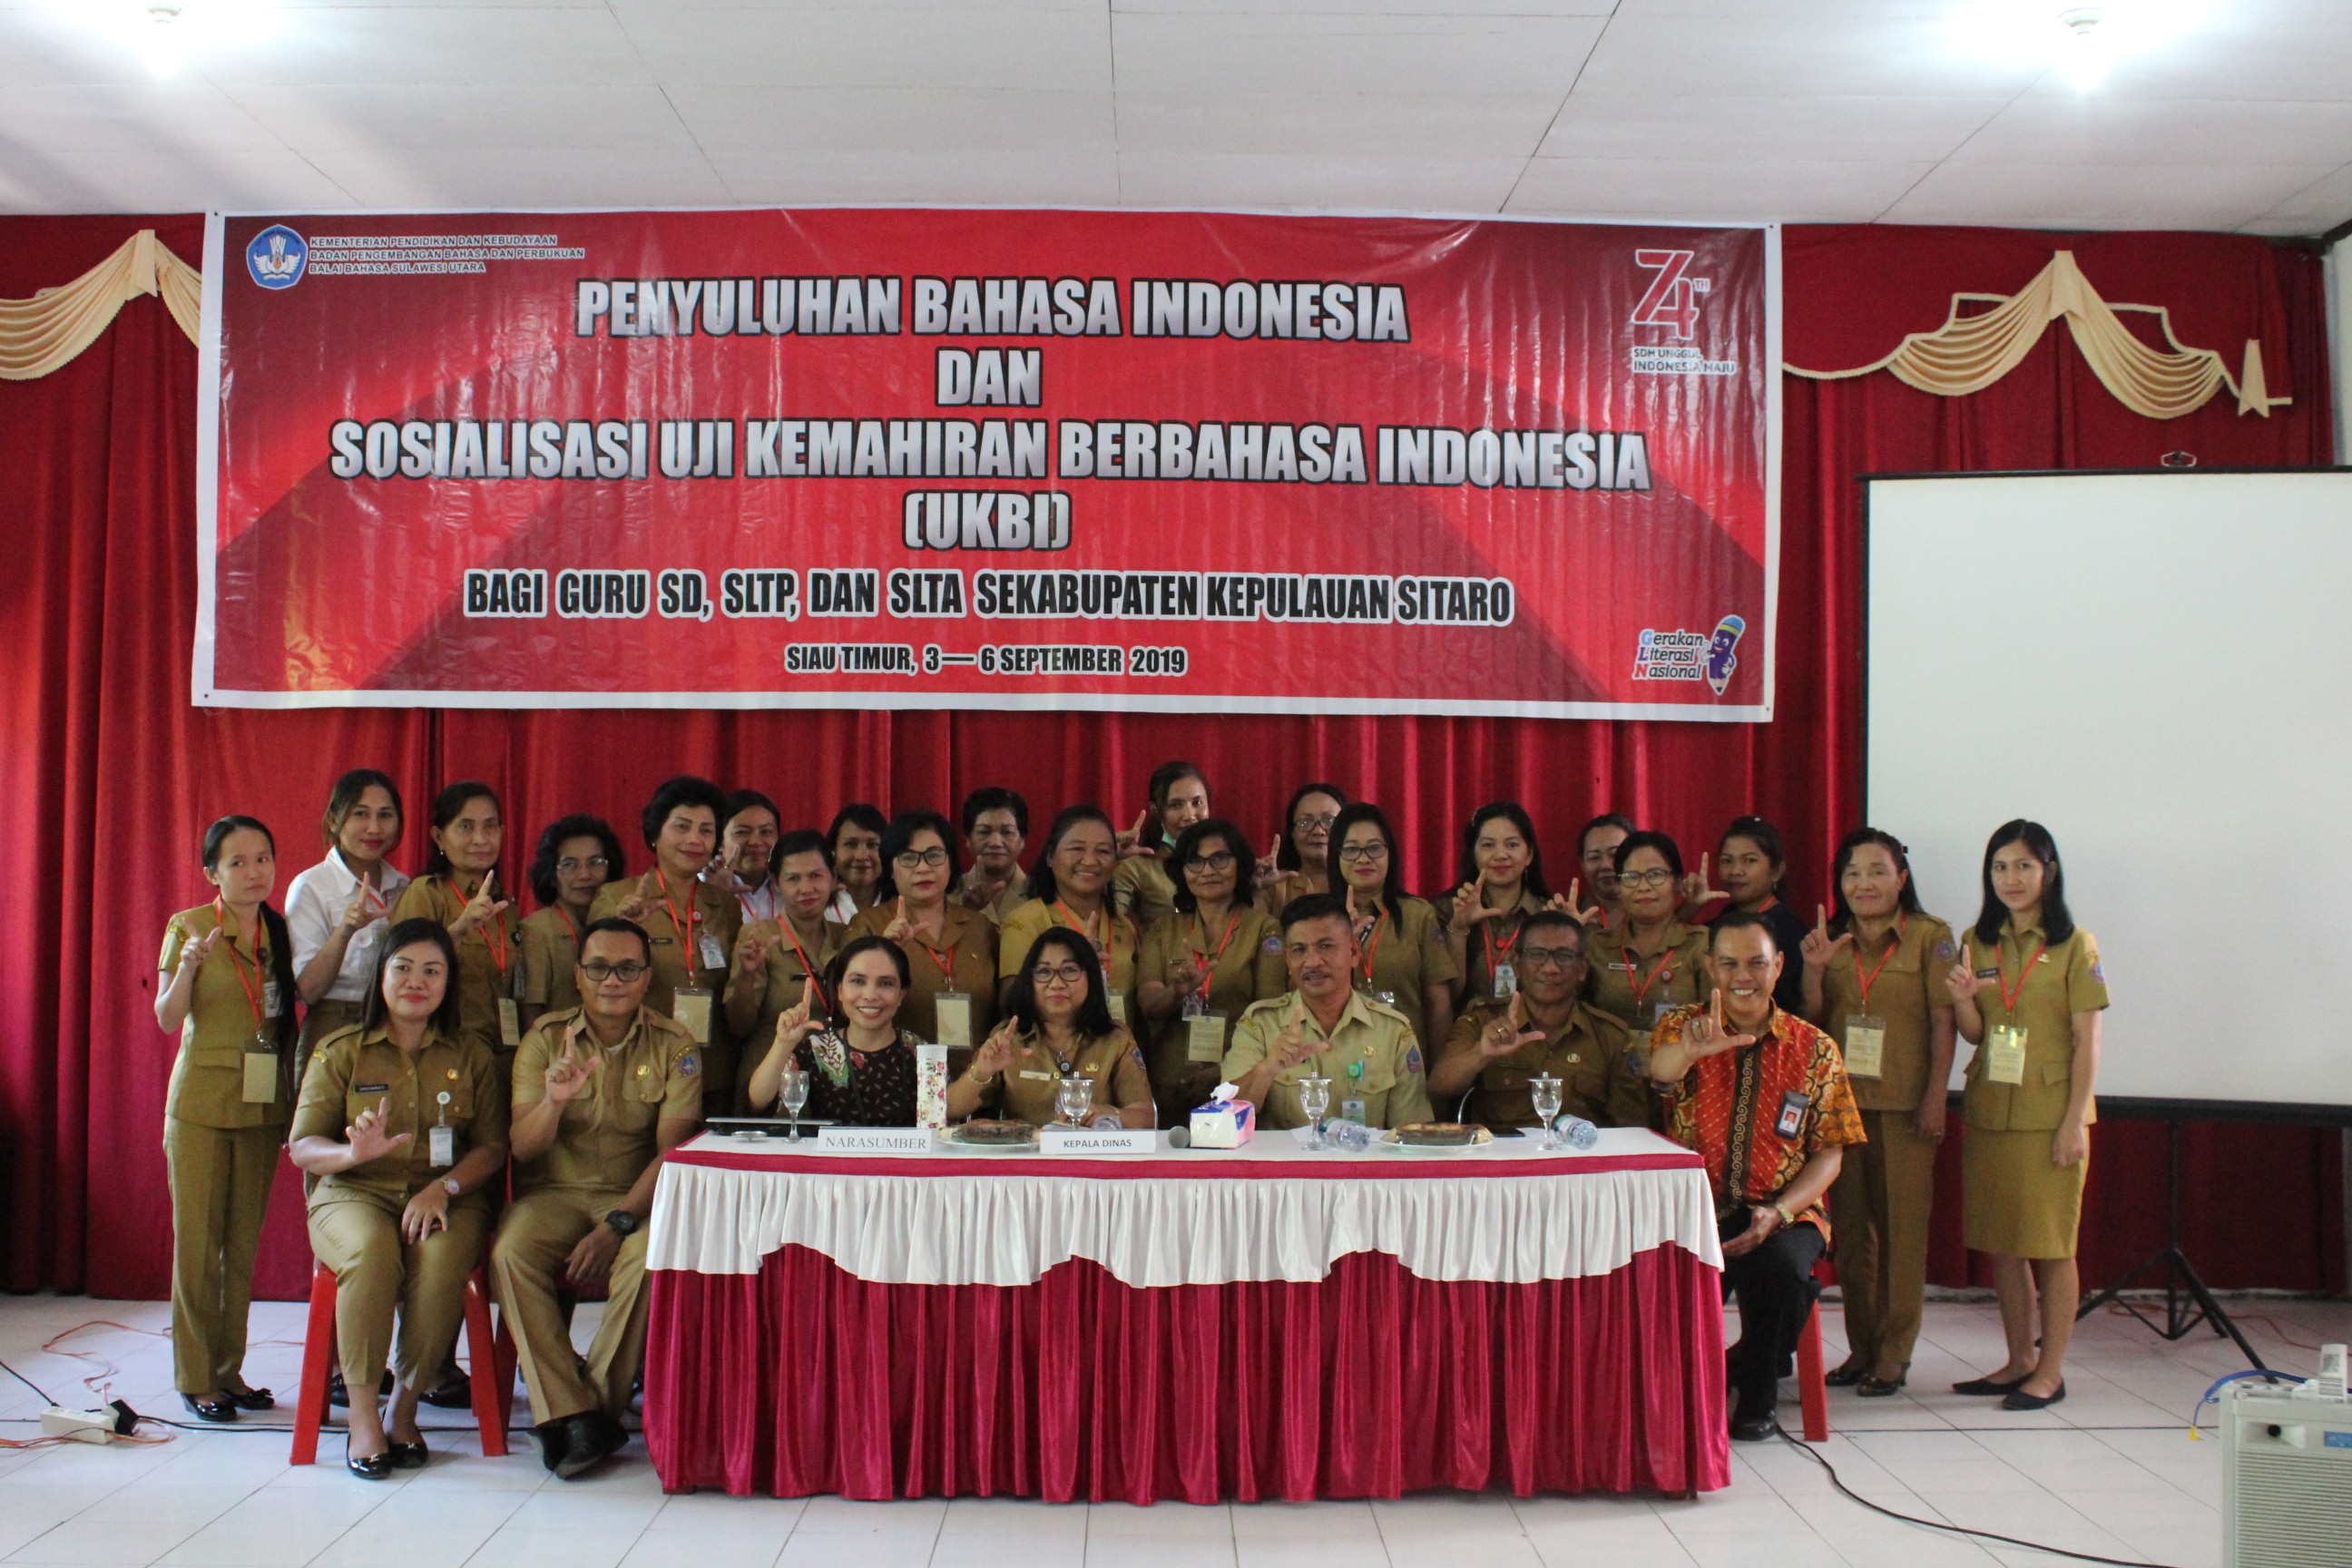 Penyuluhan Bahasa Indonesia dan Sosialisasi Uji Kemahiran Berbahasa Indonesia di Sitaro